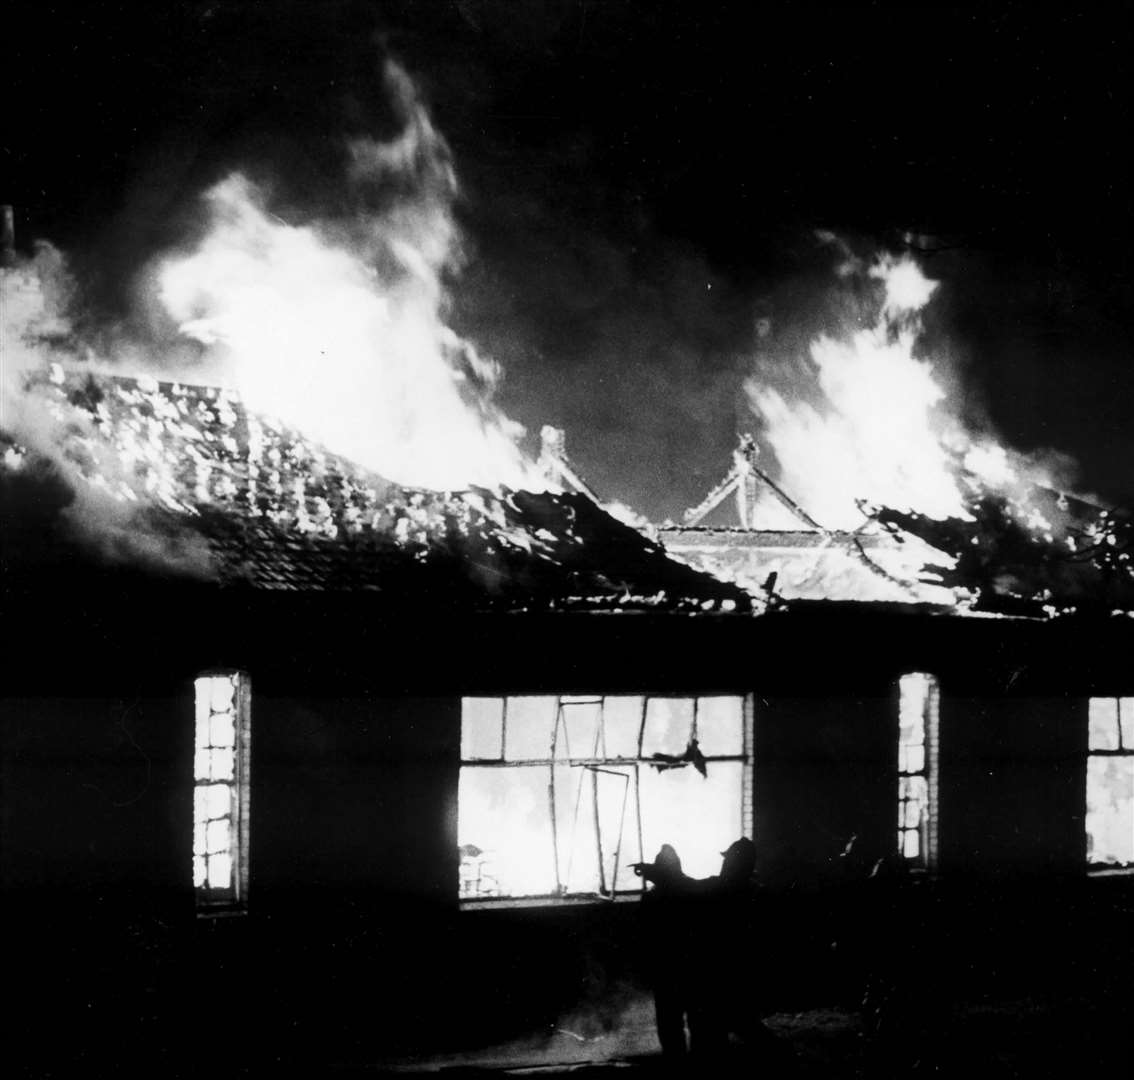 Fort Pitt Girls Grammar School, Chatham, was hit by fire in December 1985